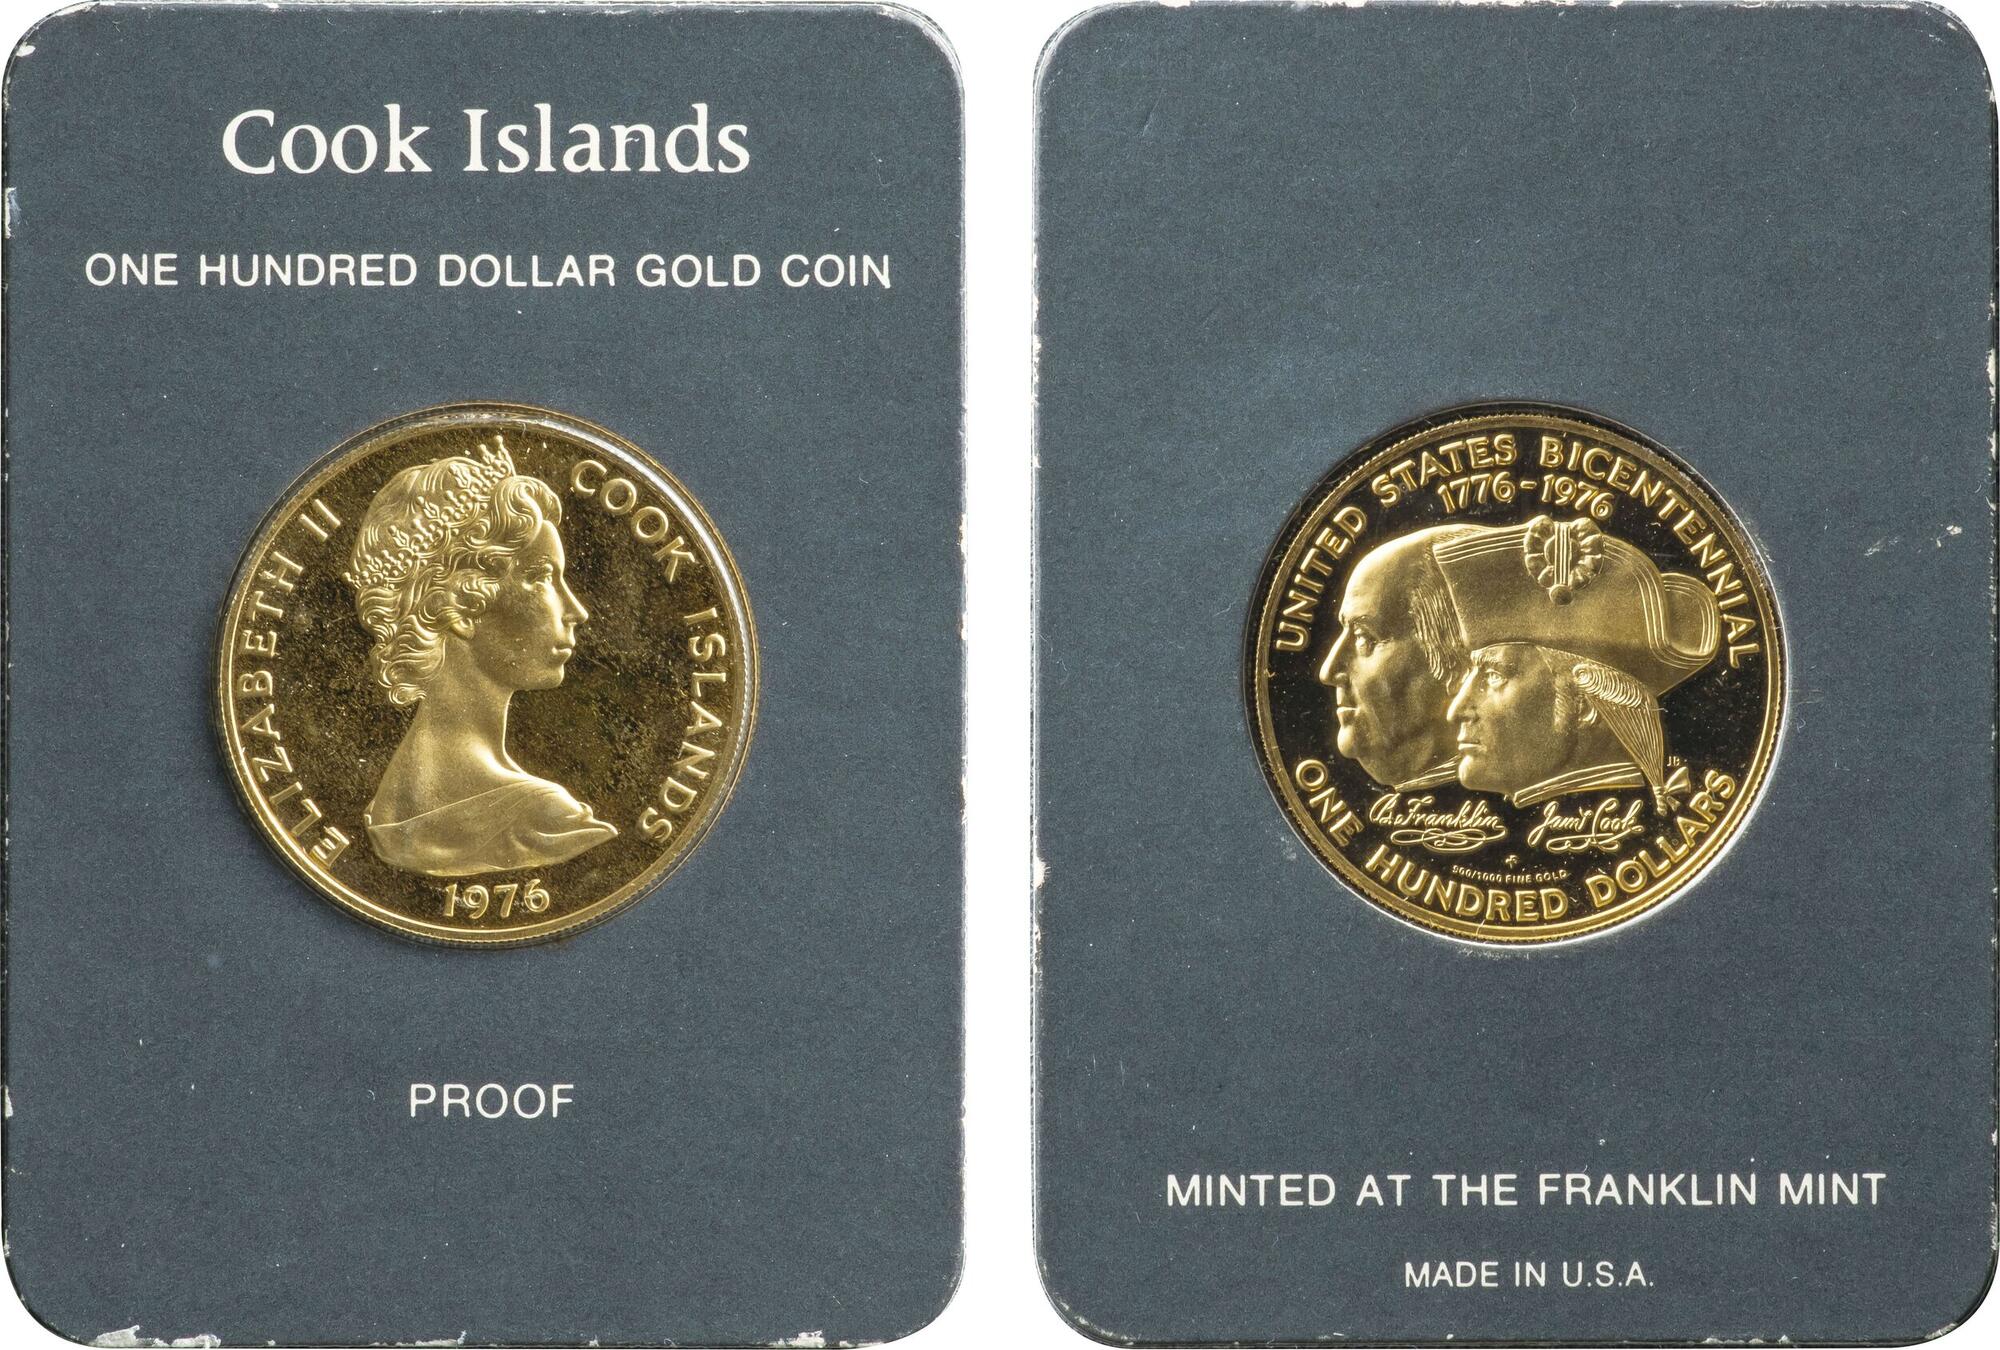 New Zealand 1976 Mint Set Uncirculated 7 coins in original mint brown folder 